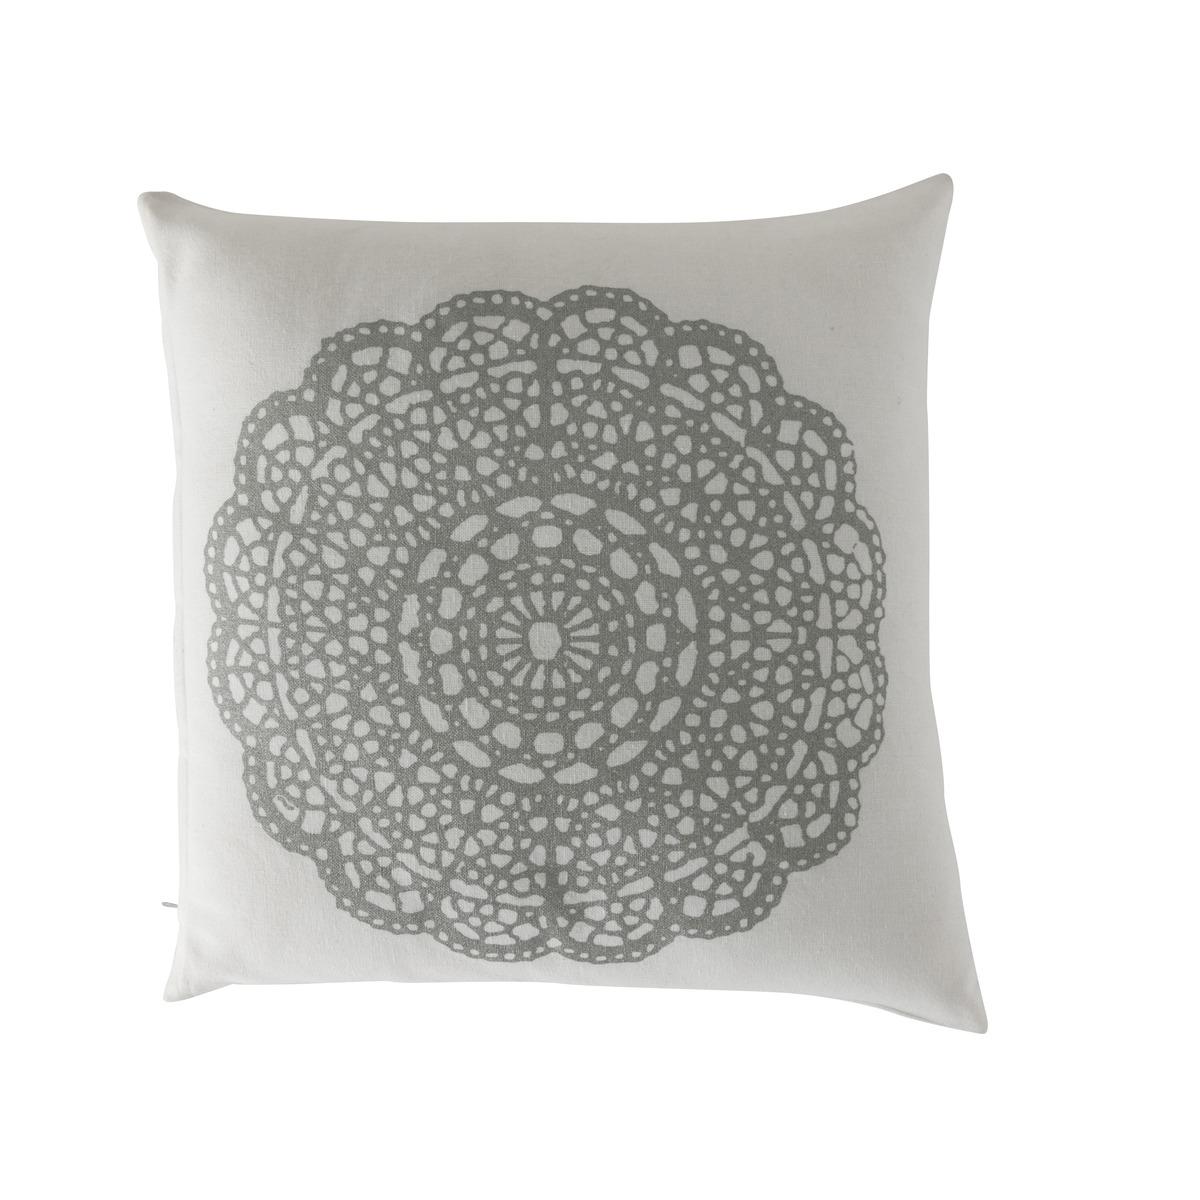 Coussin motif dentelle - 40 x 40 cm - Blanc, Gris argenté